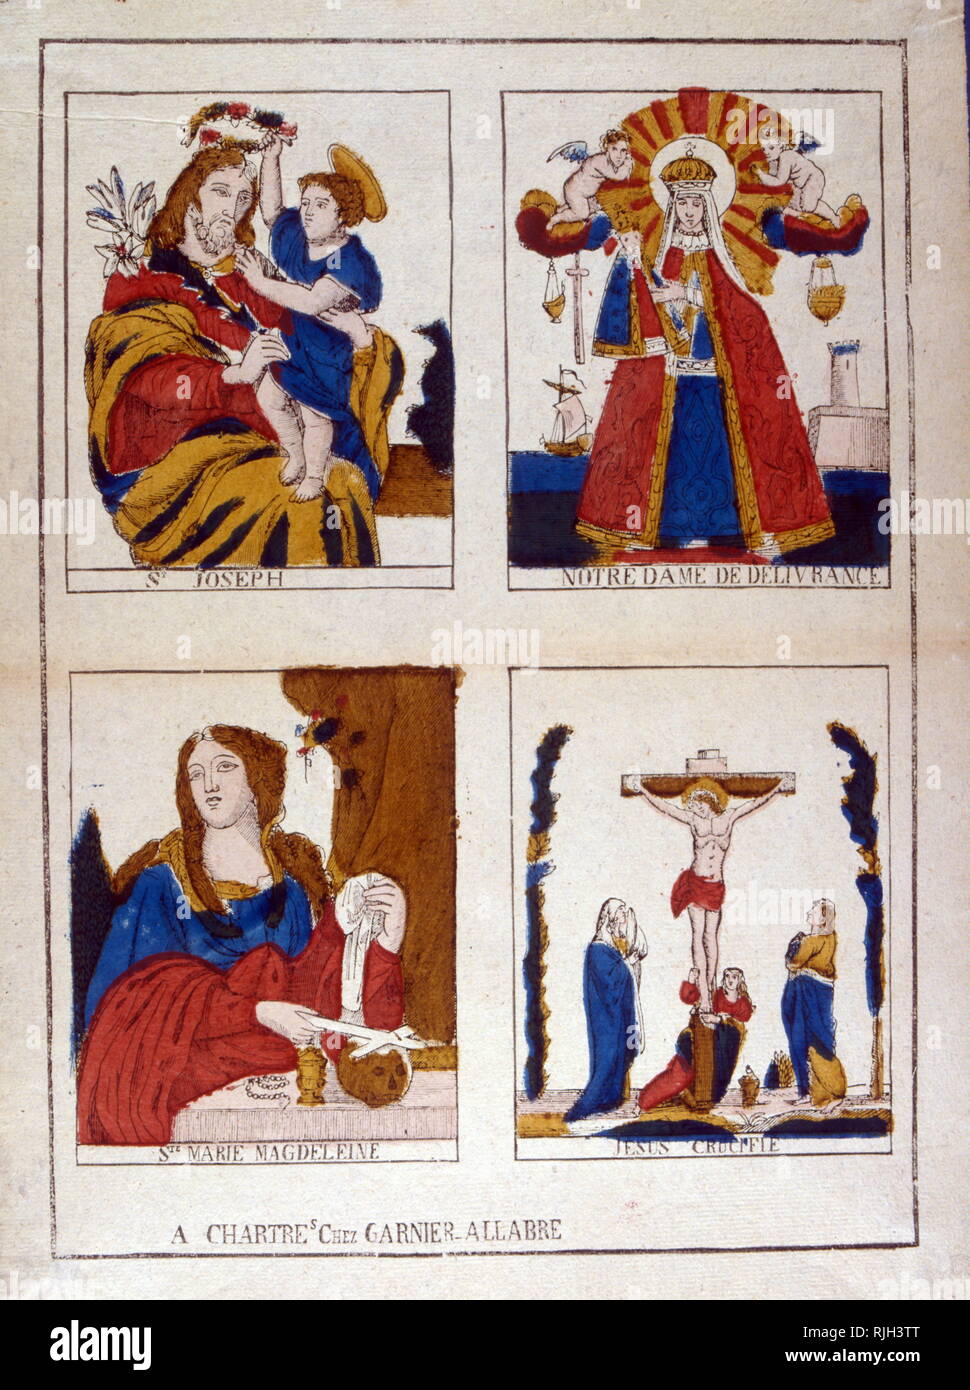 Ilustraciones de santos católicos franceses, Joseph, Notre Dame de liberación, María Magdalena, Jesús crucificado. 1860 Foto de stock